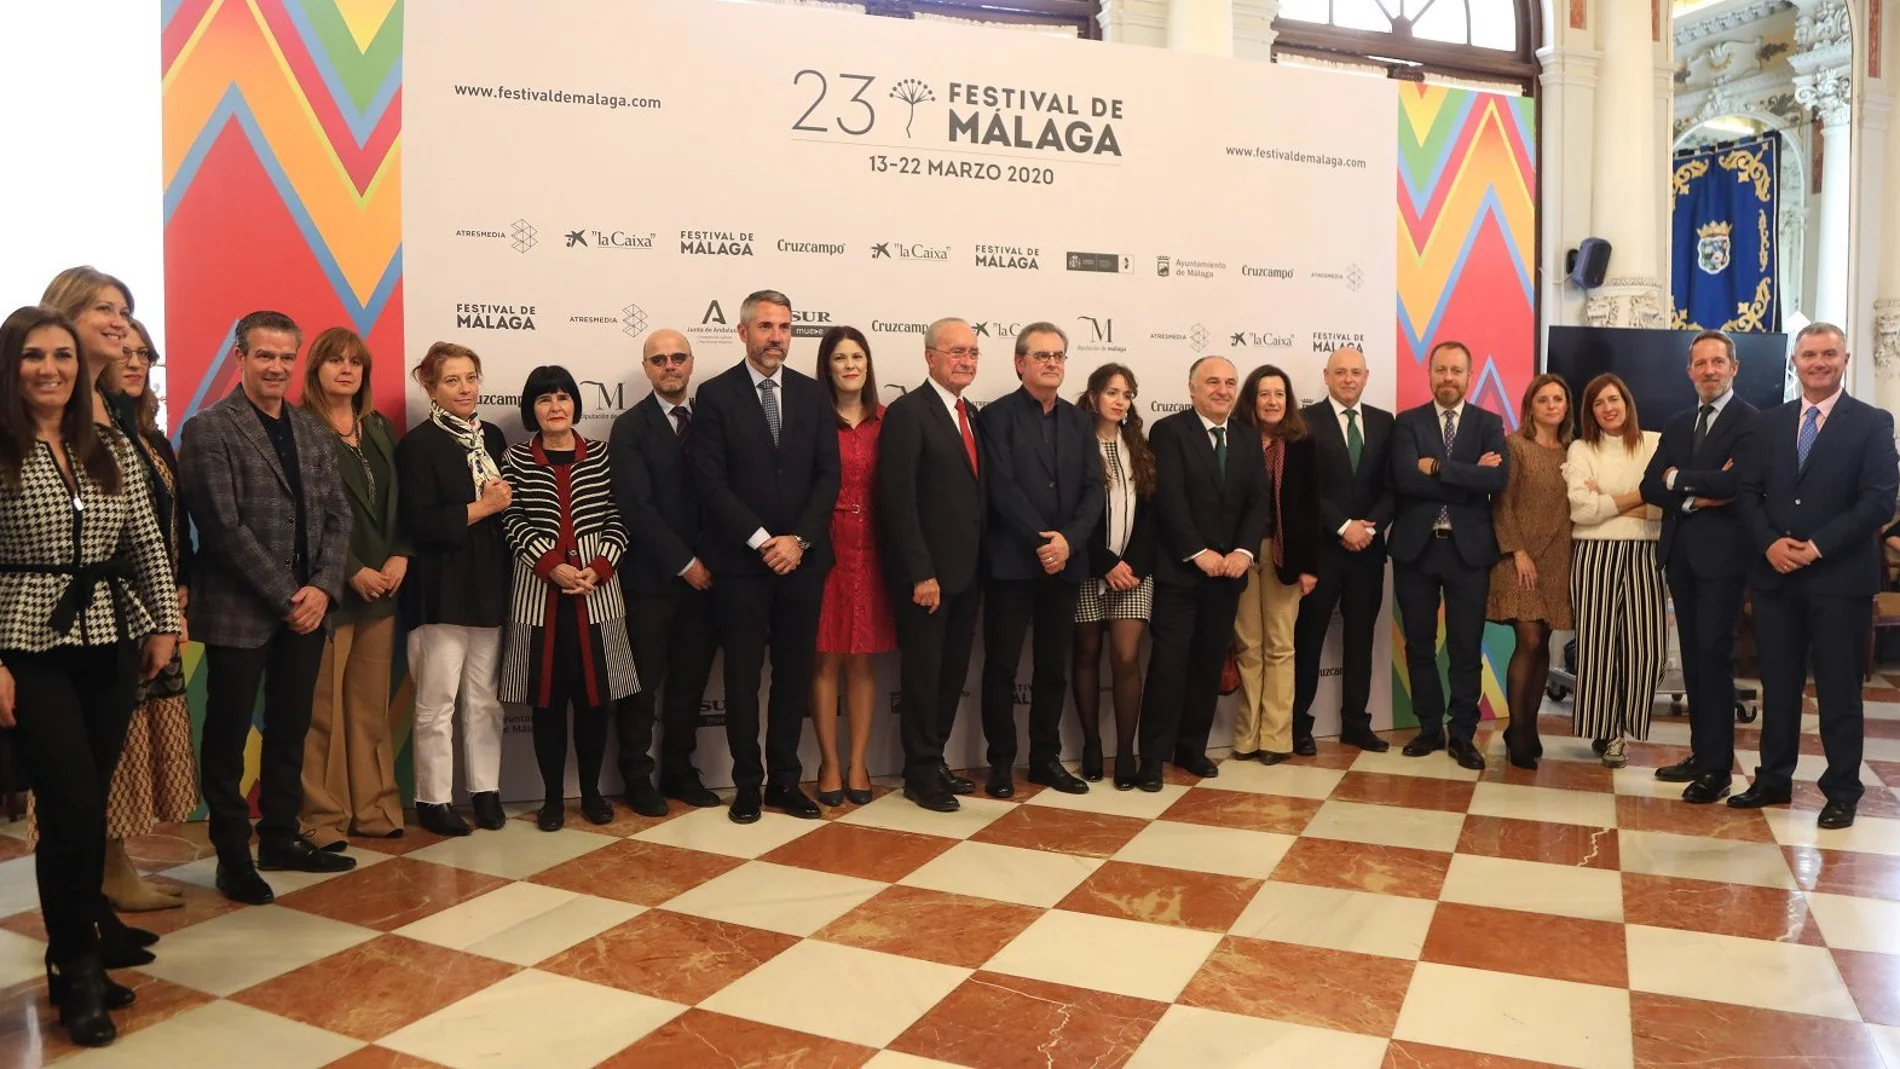 Jóvenes promesas y las series de TV se abren paso en el Festival de Málaga